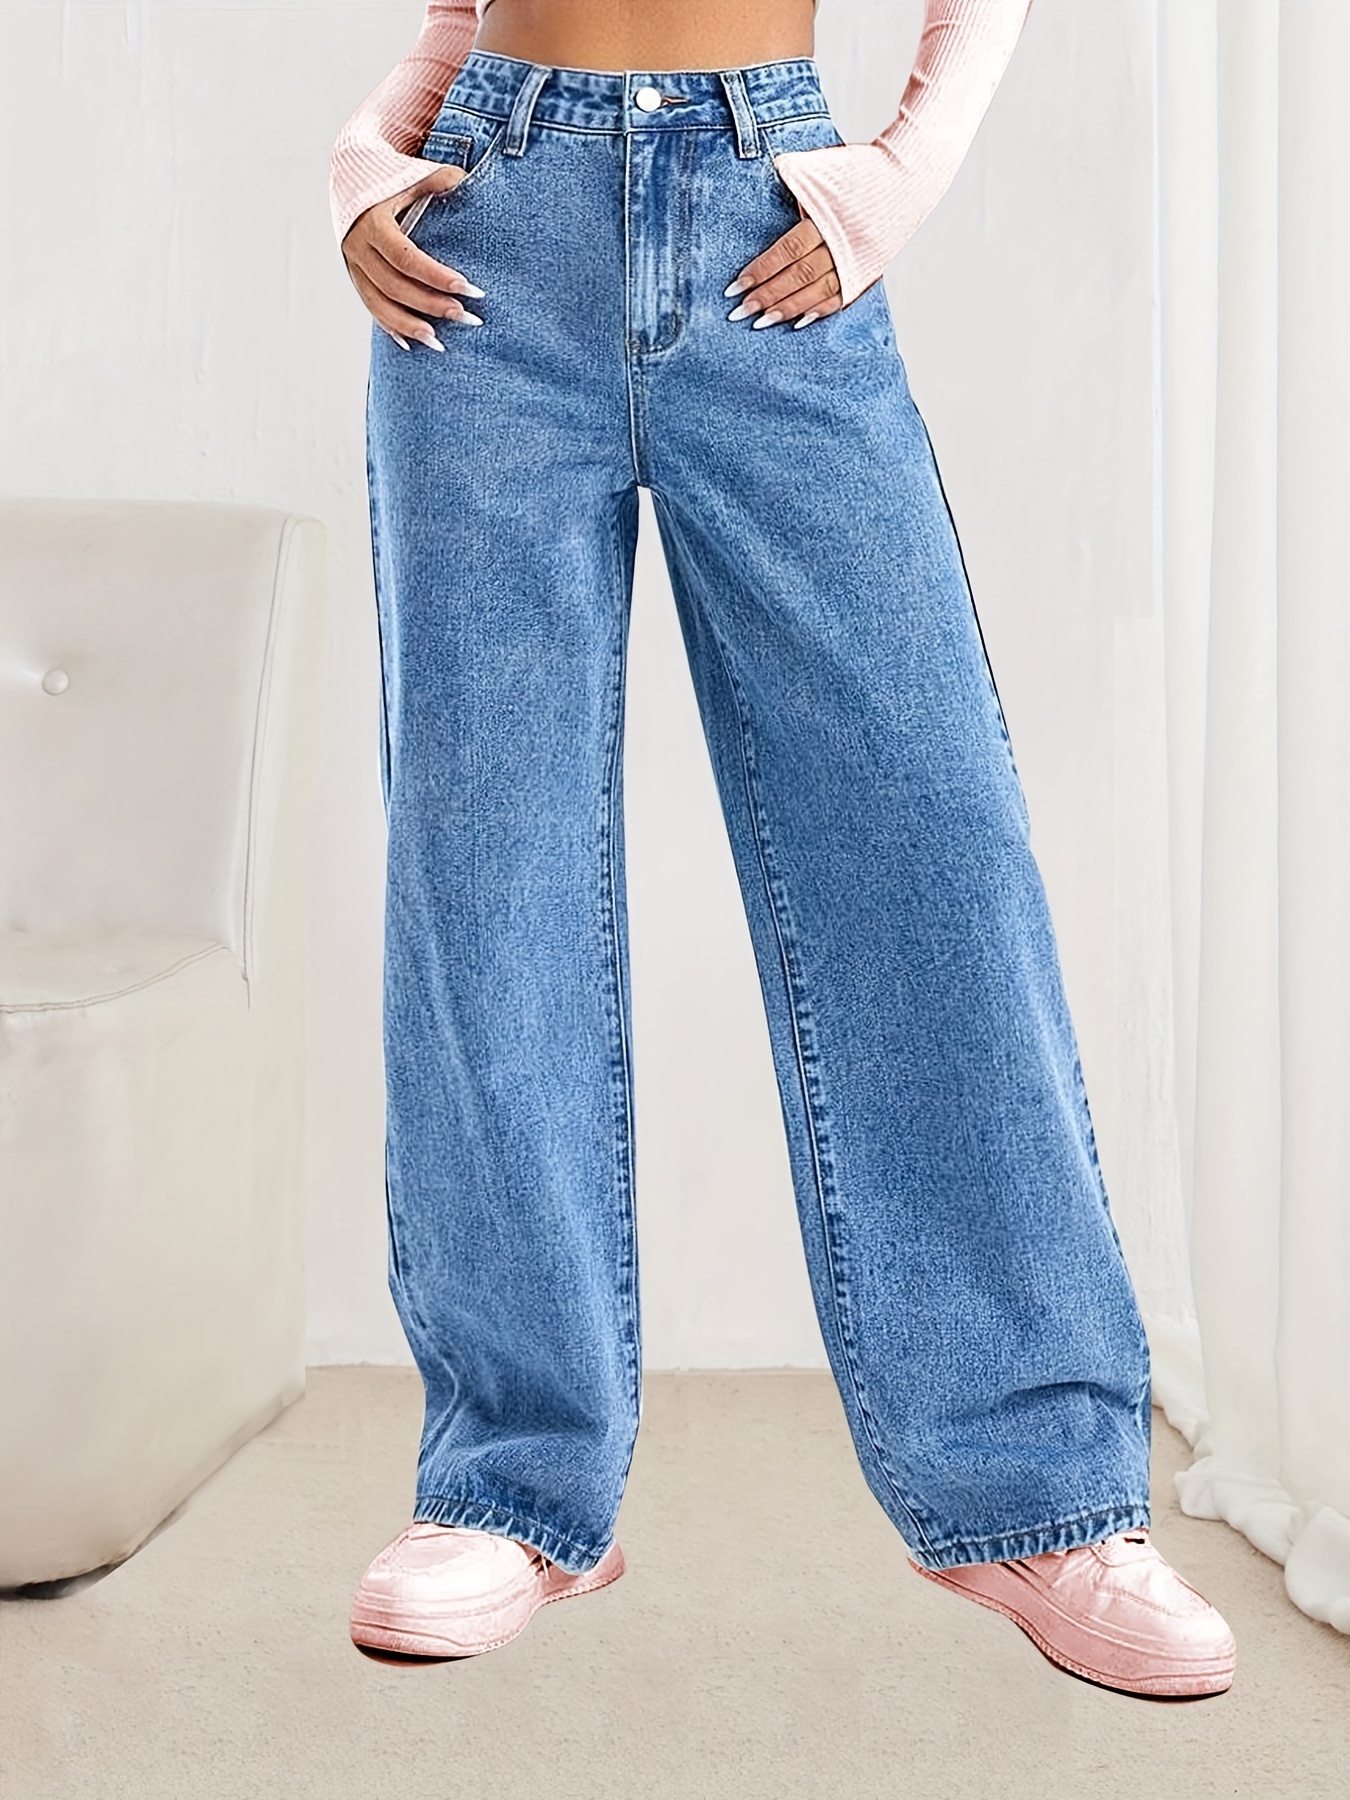 Jeans Rectos Holgados * Pantalones De Mezclilla Holgados Con Bolsillos  Cortados Sin Estiramiento, Jeans Y Ropa De Mezclilla Para Mujeres